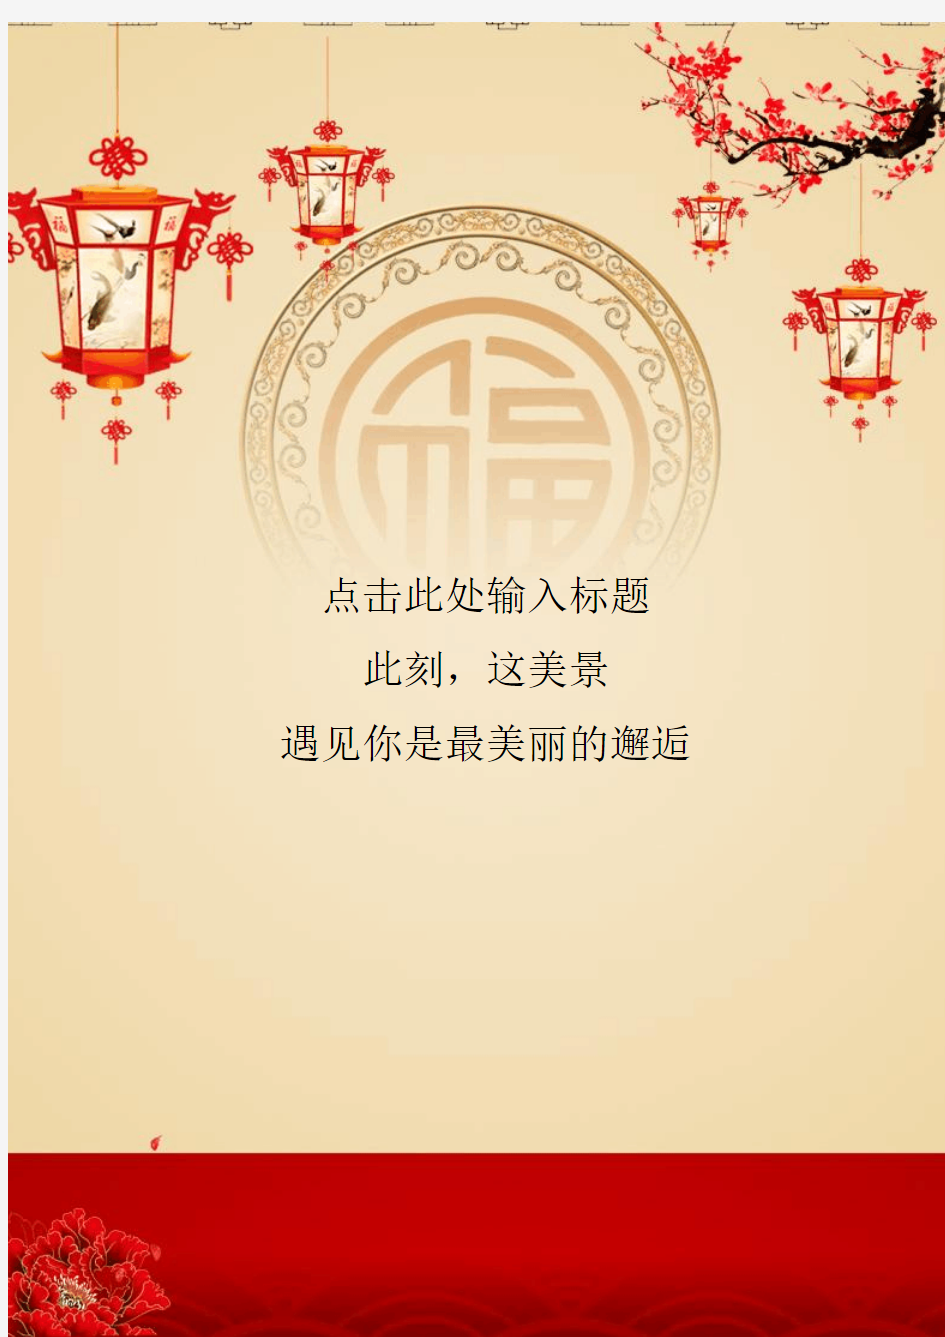 《信纸封面》 传统中国风信纸(淡色)